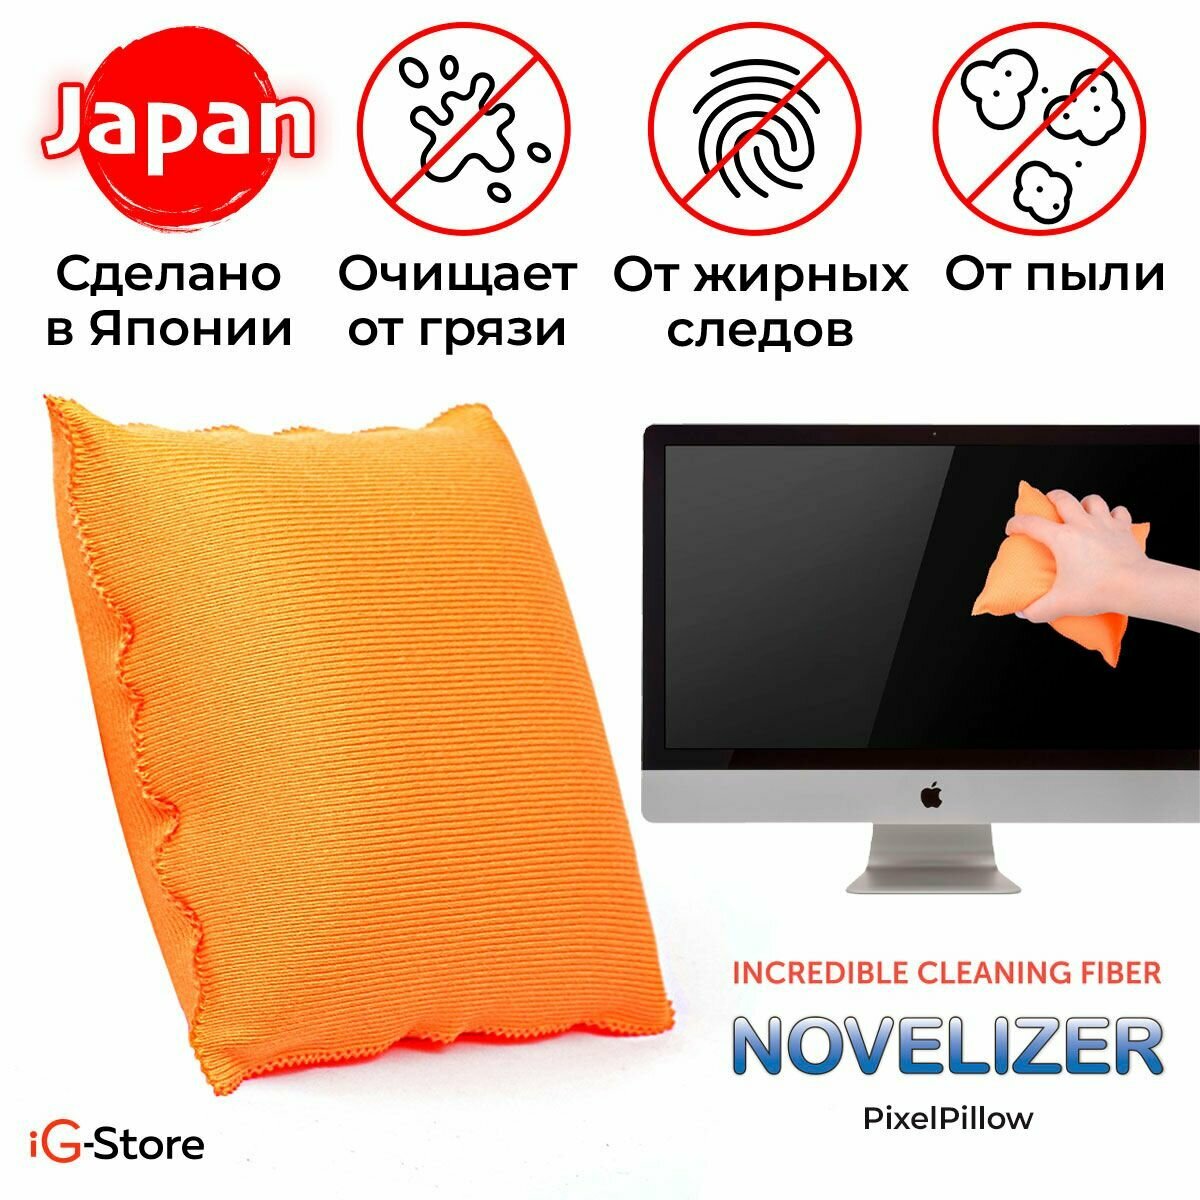 Салфетка-подушка для уборки PixelPillow из японского микроволокна Novelizer для очистки экранов телевизора, монитора, ноутбука, планшета, зеркал, стекол, глянцевых поверхностей из микрофибры многоразовая